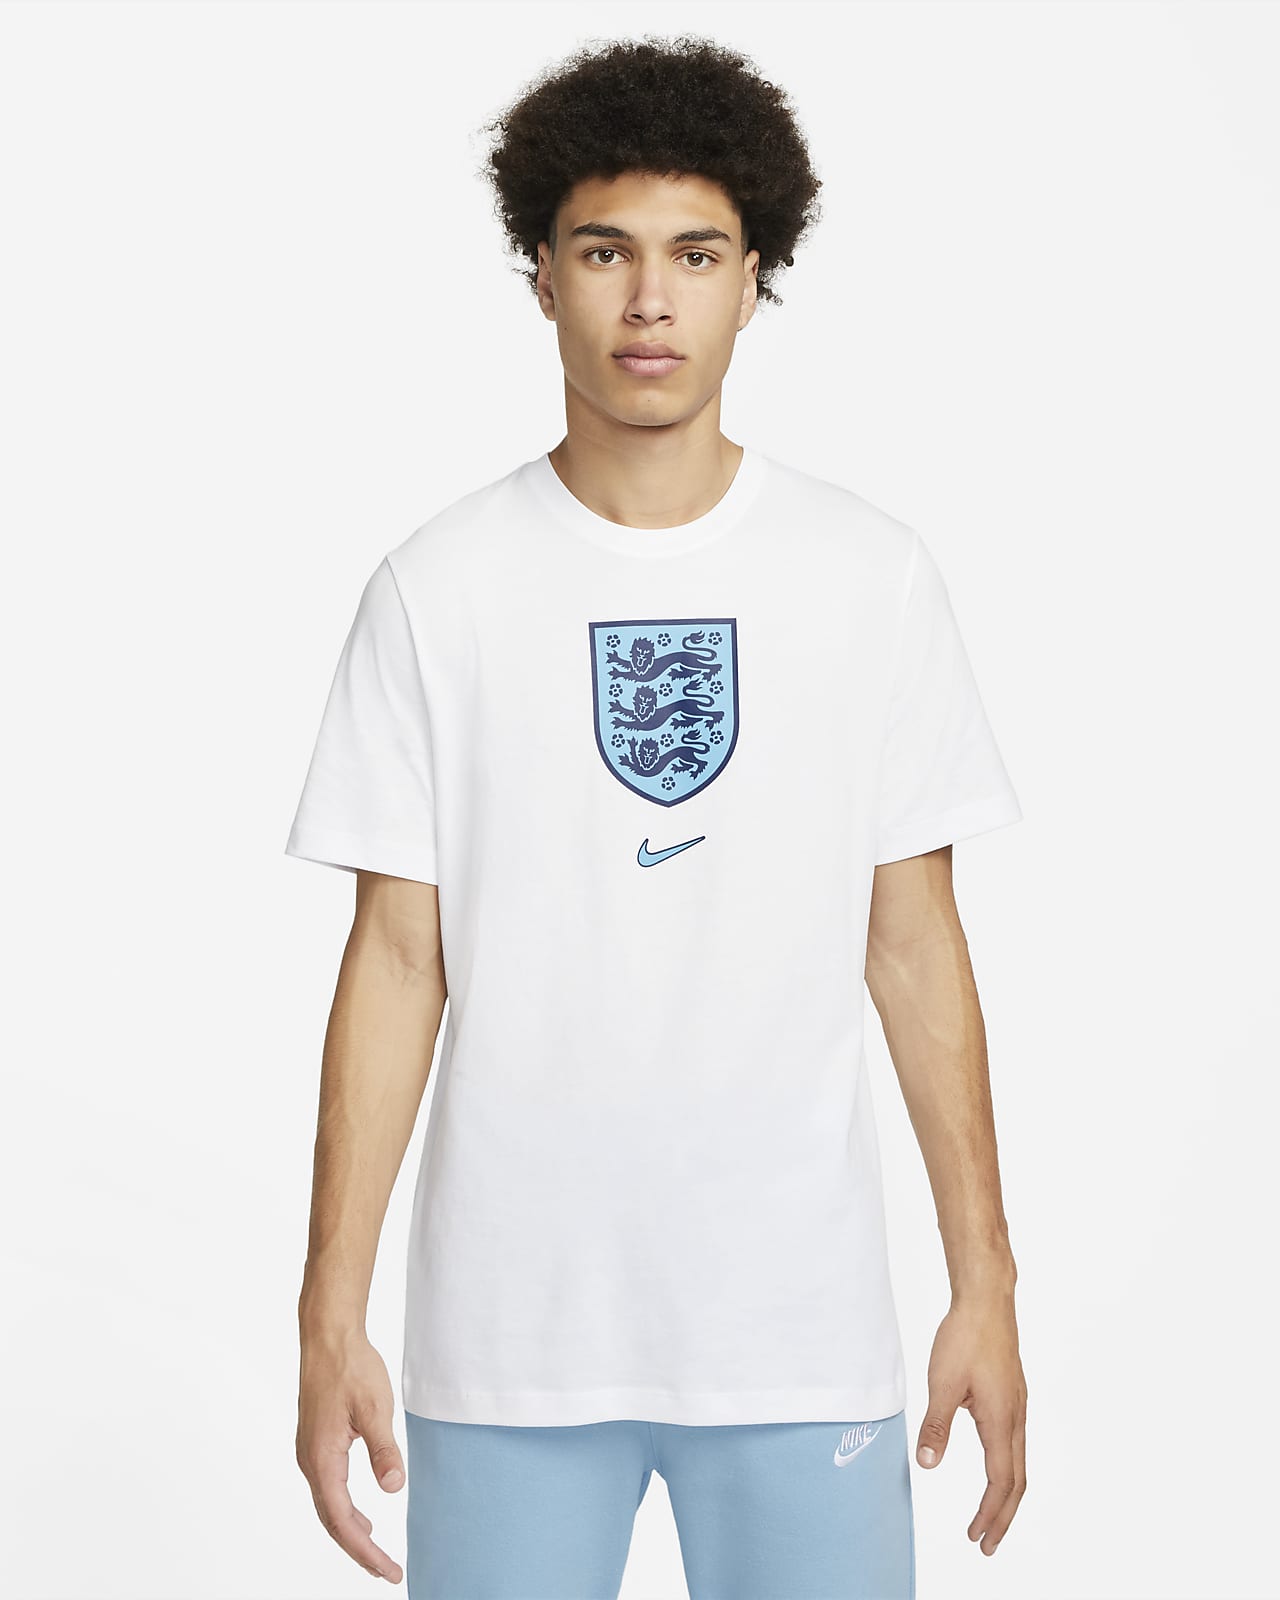 Sneeuwwitje Onderverdelen vod England Men's Nike T-Shirt. Nike.com